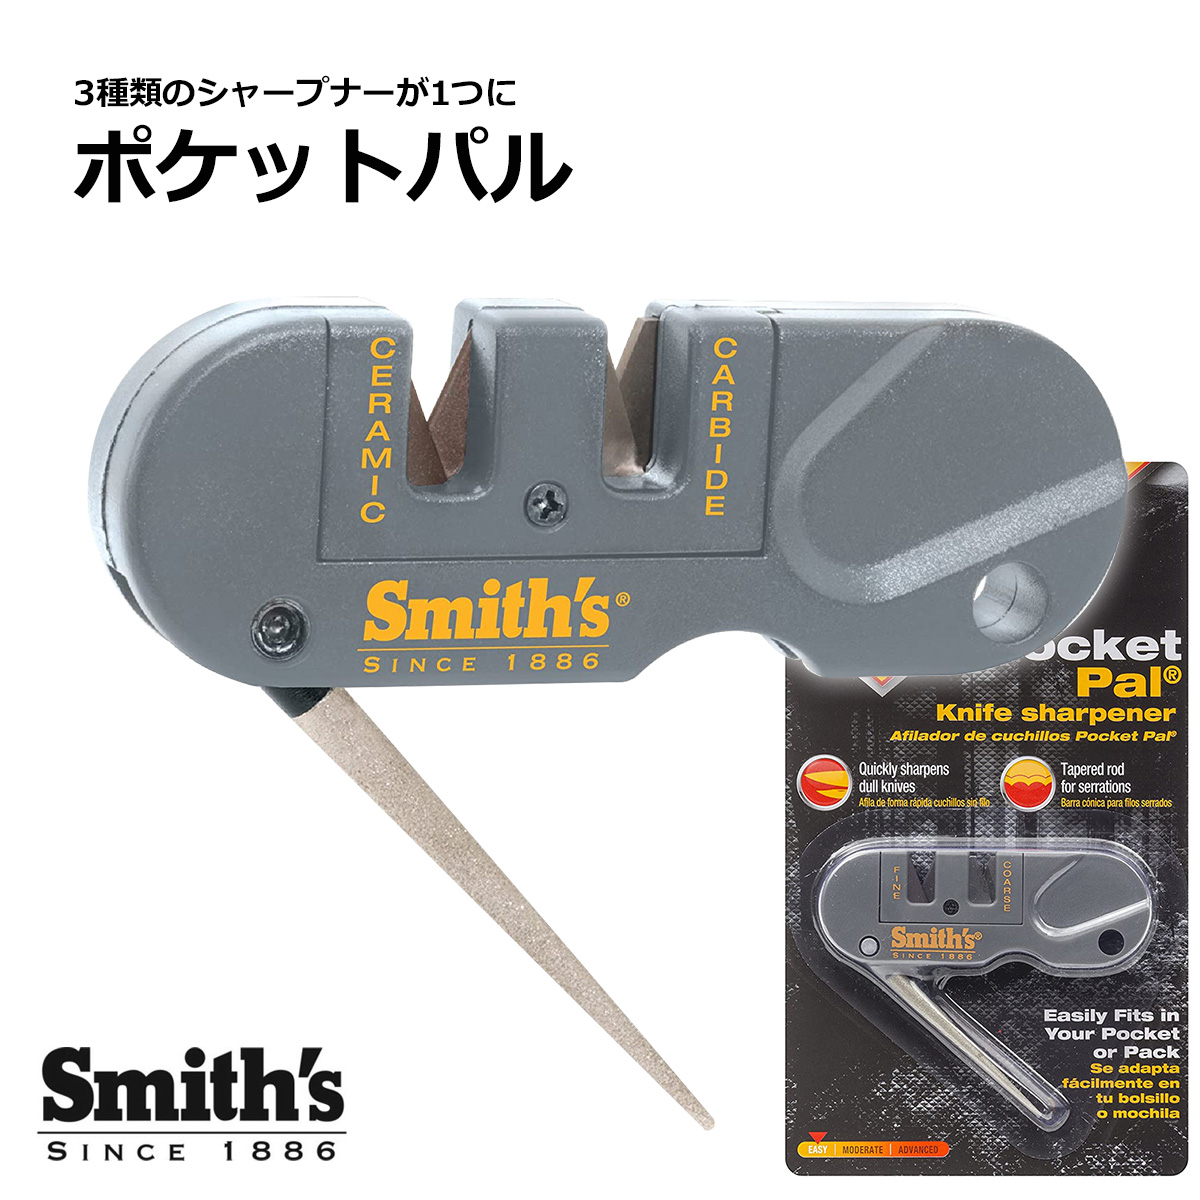 楽天市場】【ポイント2倍】 Smith's ポケットパル ナイフシャープナー : 東京道具商会